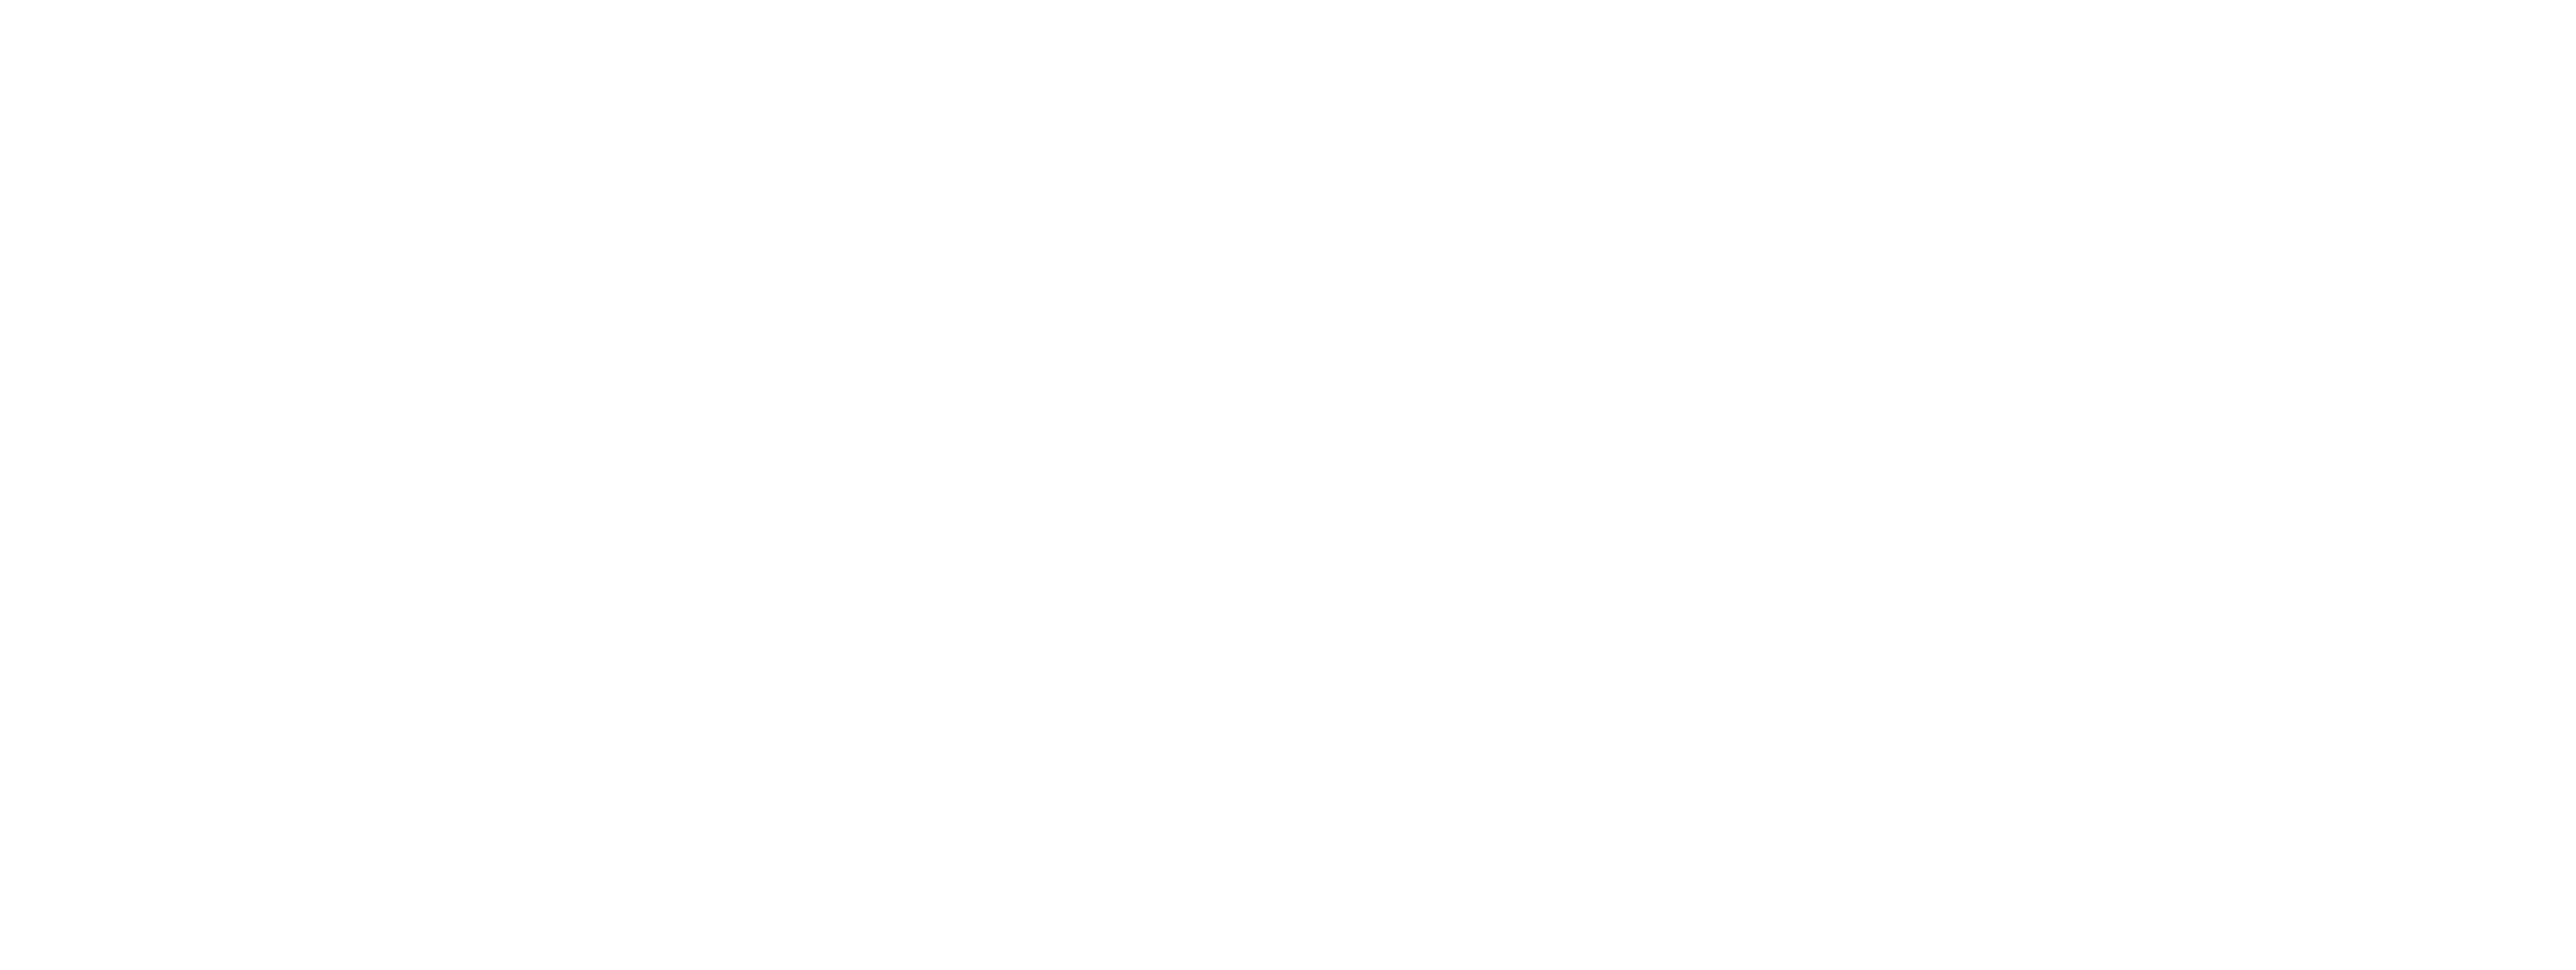 PEN15 logo